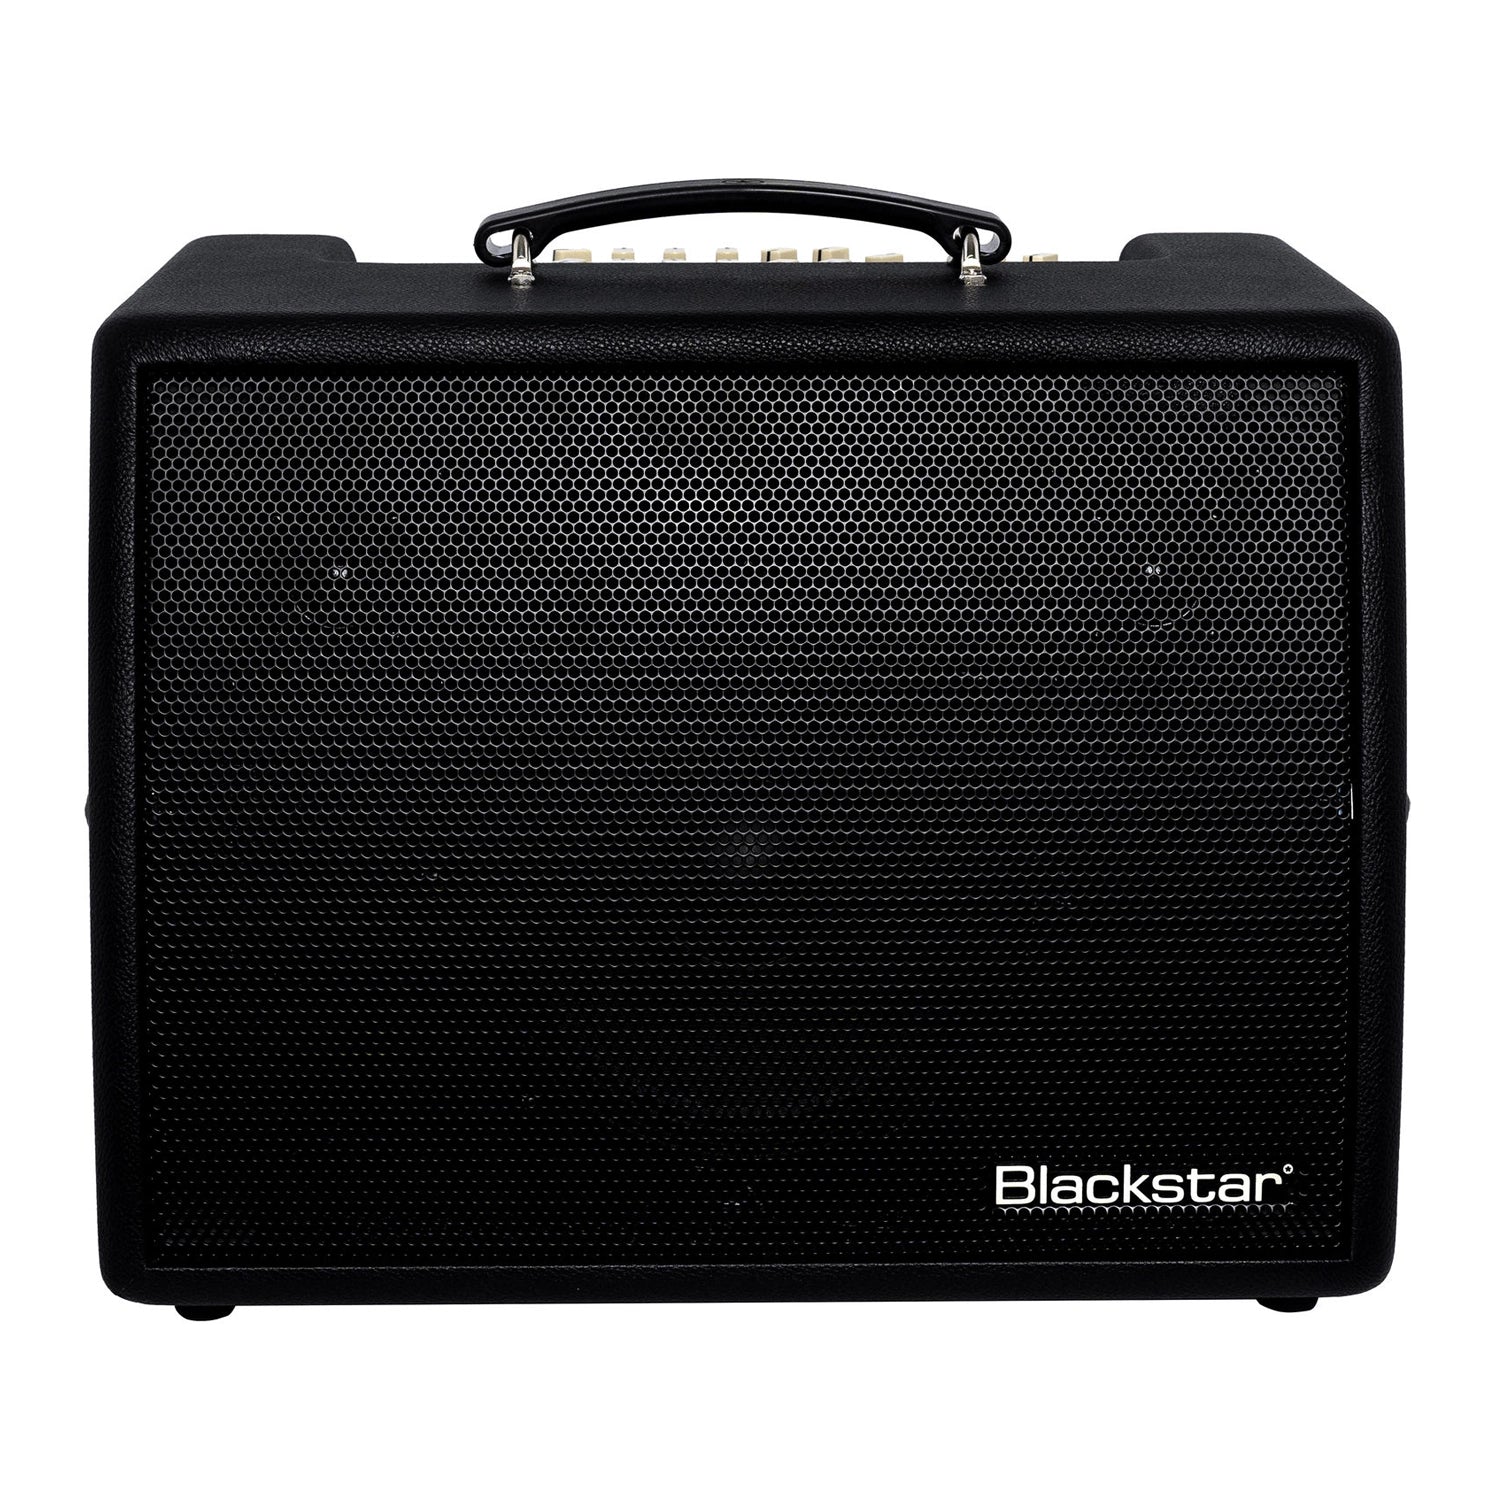 Blackstar Sonnet 120 1x8 Acoustic Combo Amplifier - Black